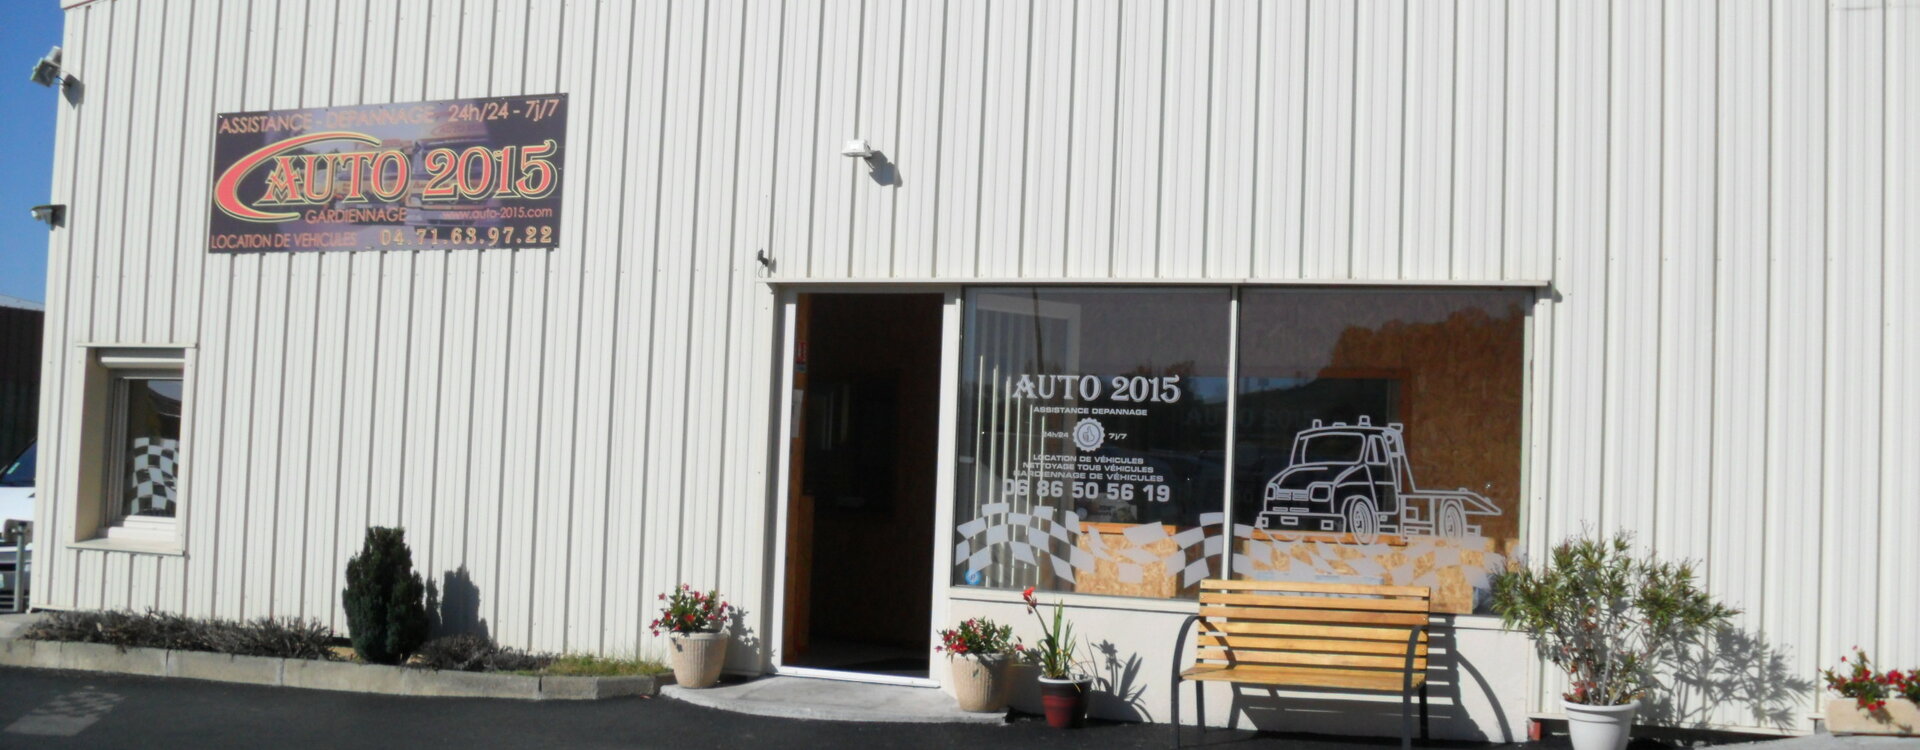 Mentions Légales d'AUTO 2015 - Aurillac